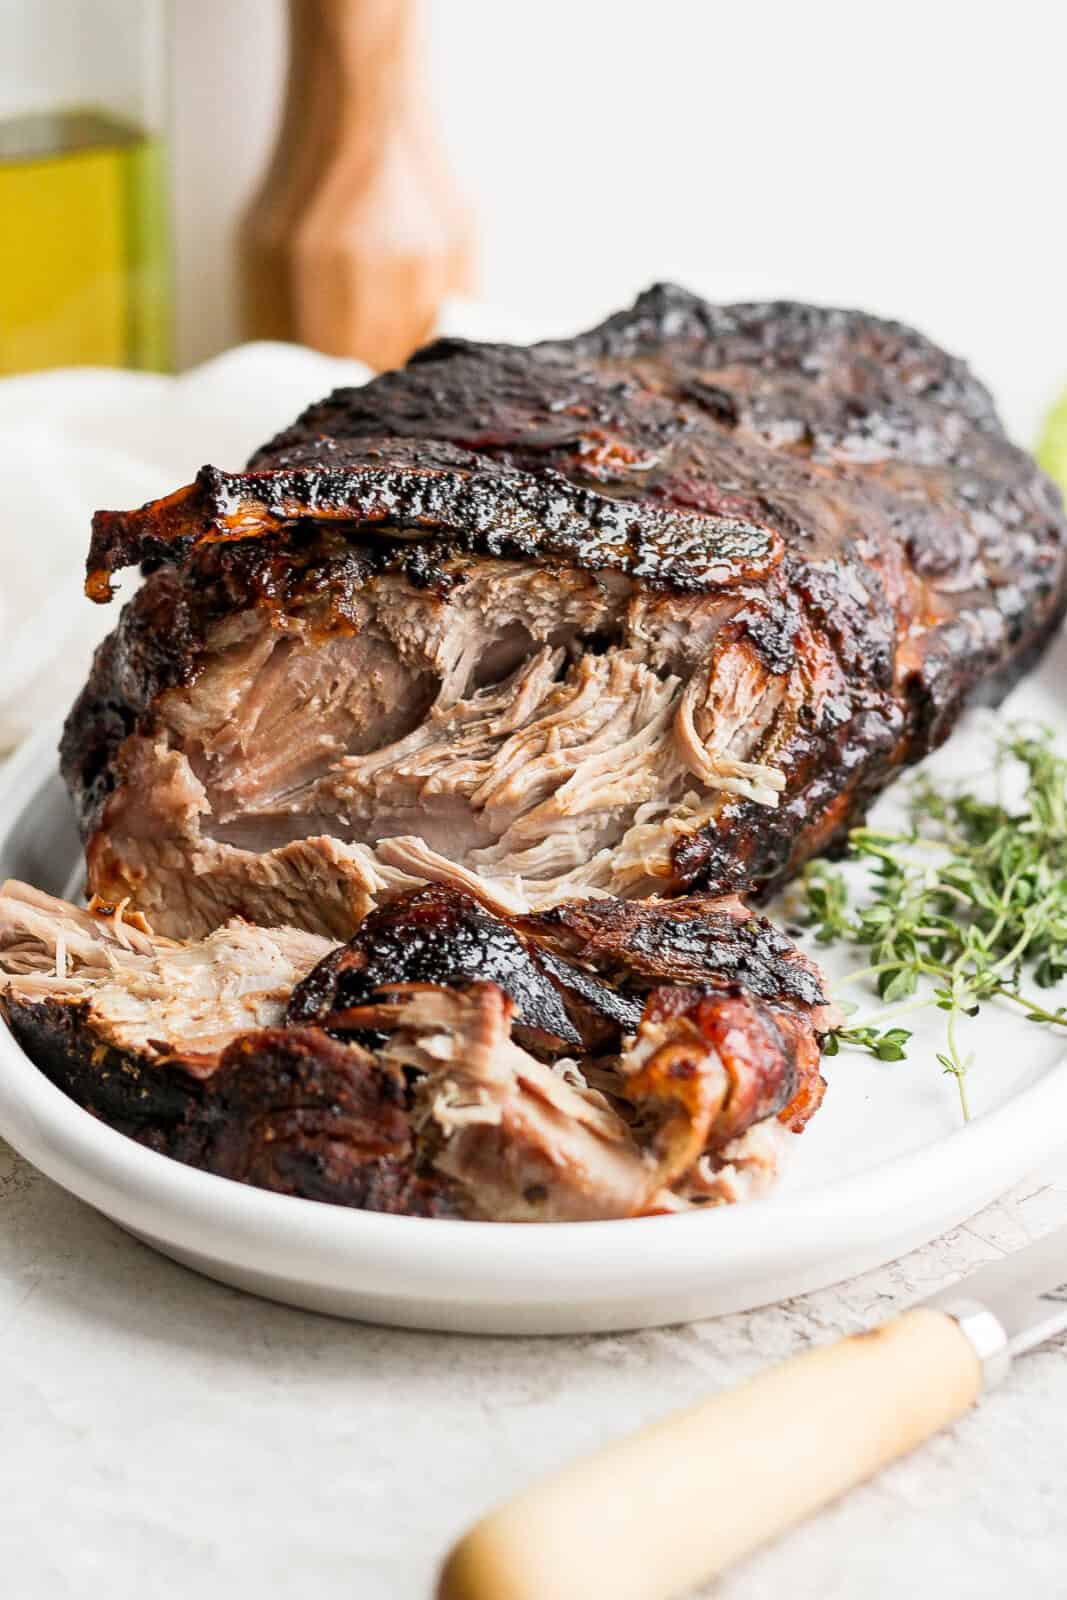 An oven roasted pork shoulder on a platter.